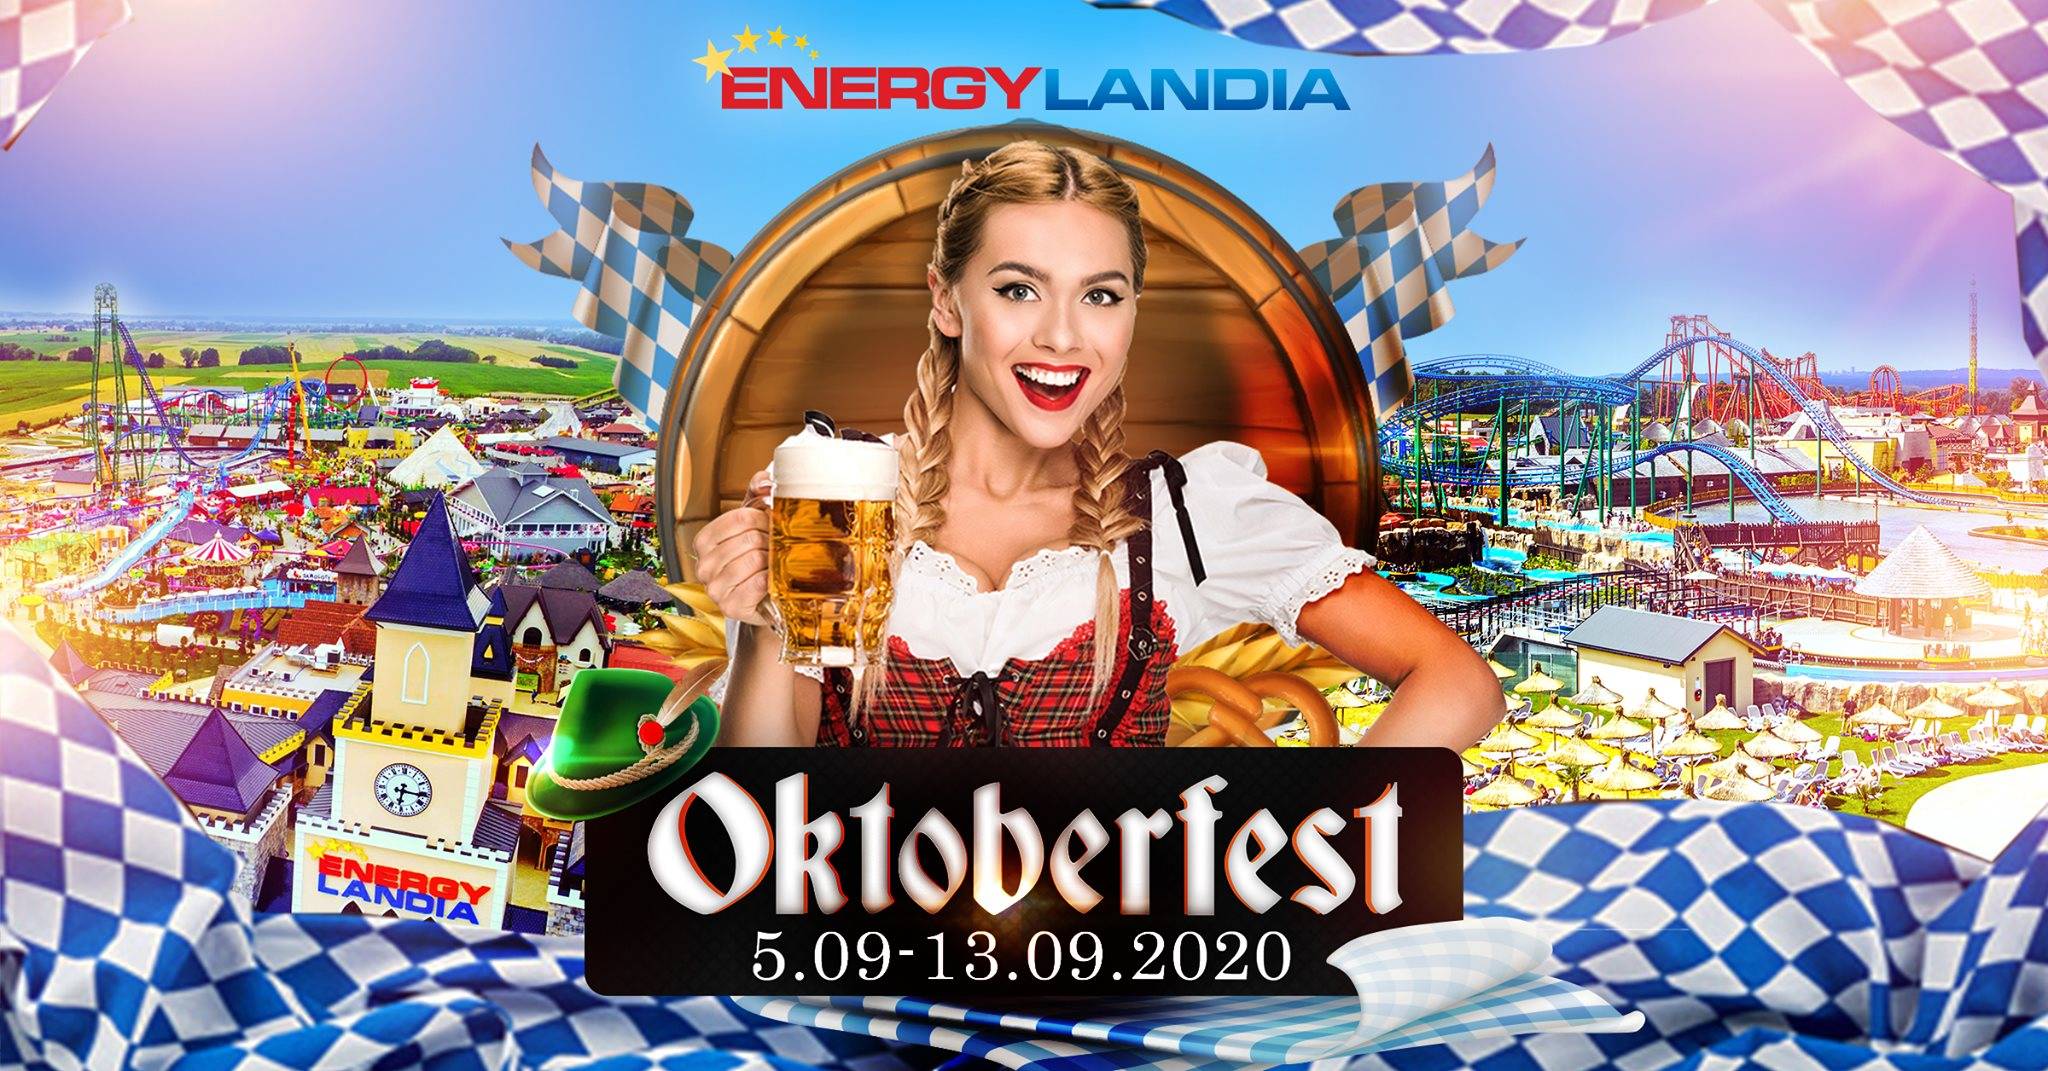 Октоберфест — пивной фестиваль в германии